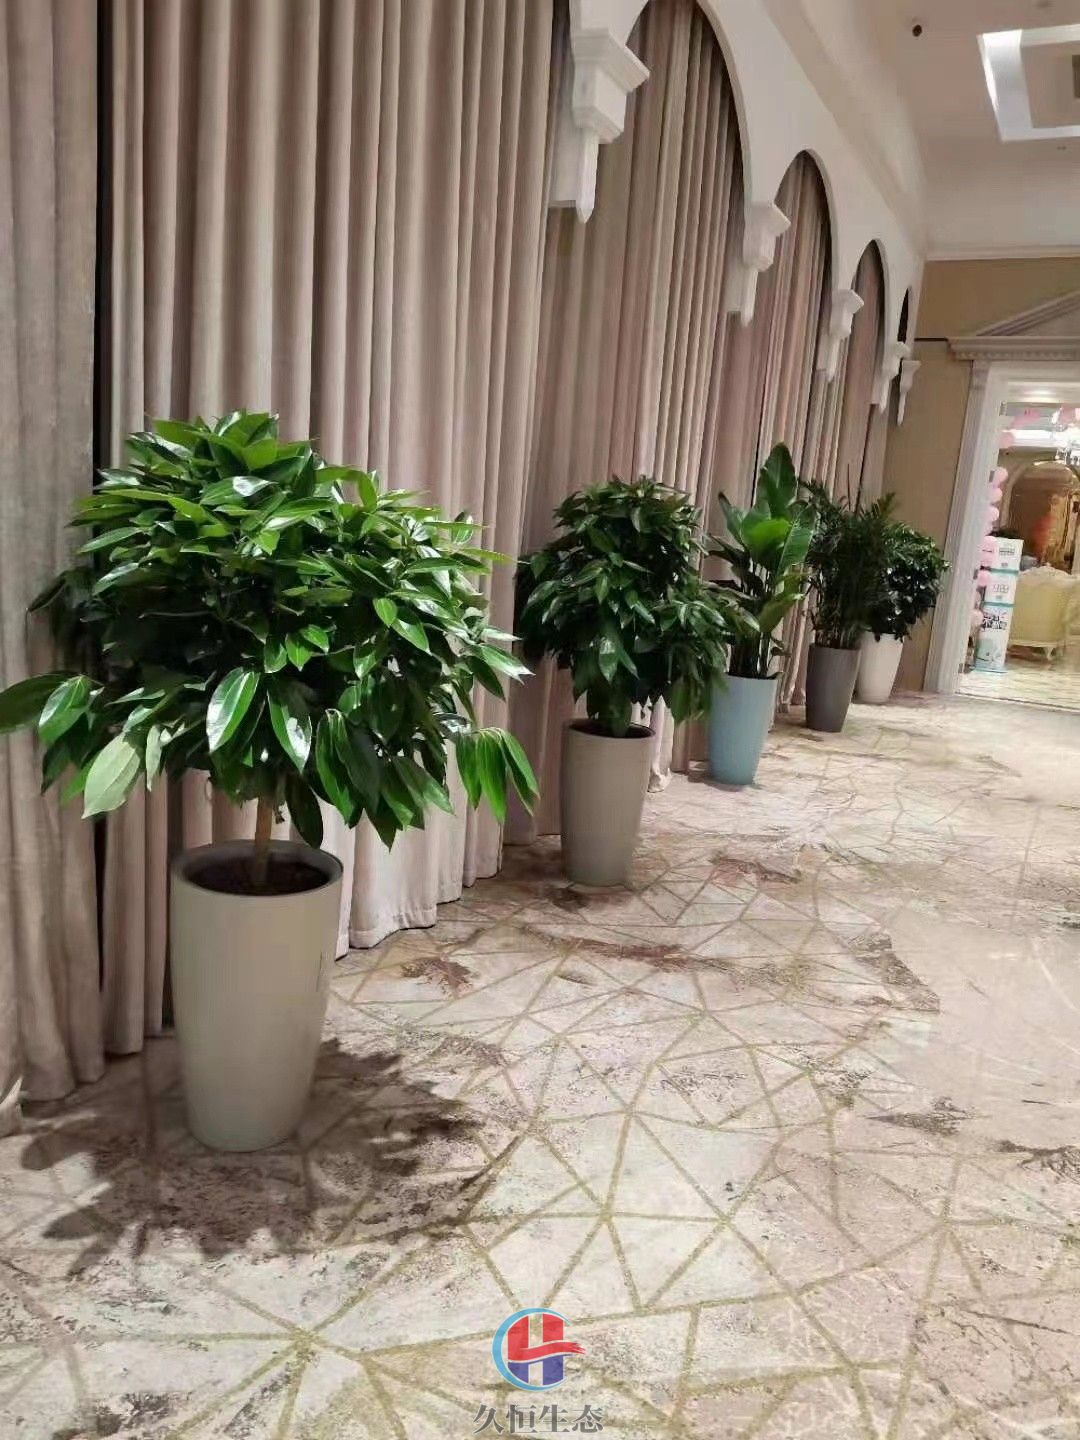 台州酒店走廊花卉绿植摆放